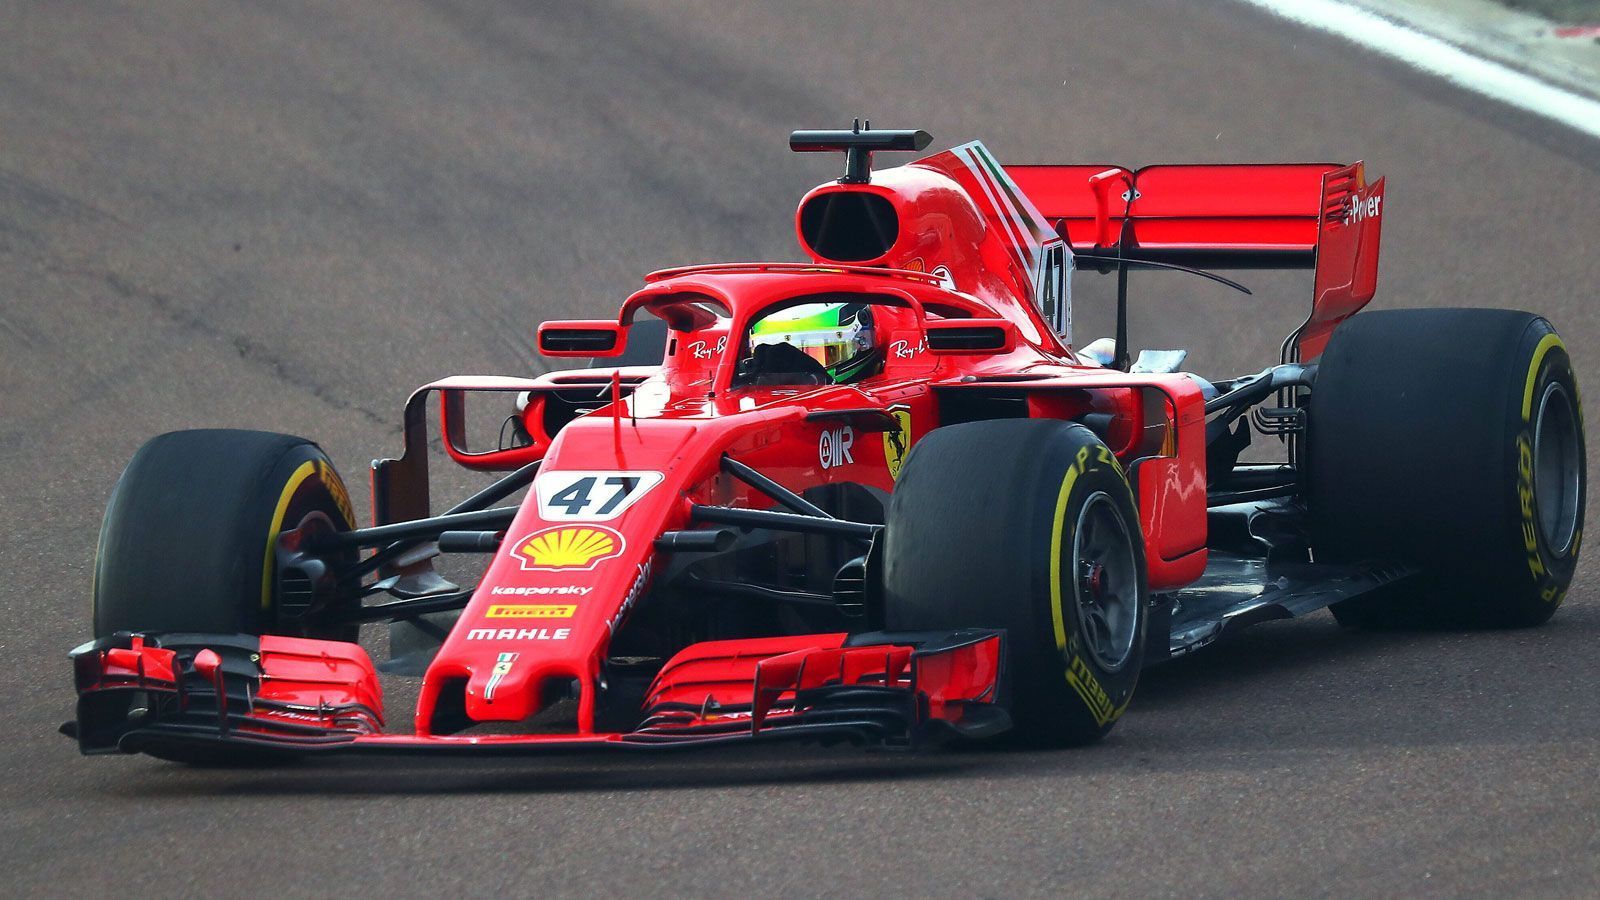 
                <strong>Der Bolide</strong><br>
                Schumacher Junior fuhr in dem drei Jahre alten Ferrari SF71H - ein Modell von 2018, mit dem Sebastian Vettel seine Runden drehte und Vizeweltmeister wurde. Der Bolide hat insgesamt knapp 1000 PS unter der Haube und ist inzwischen nicht mehr von der Testbeschränkung der Formel 1 betroffen.
              